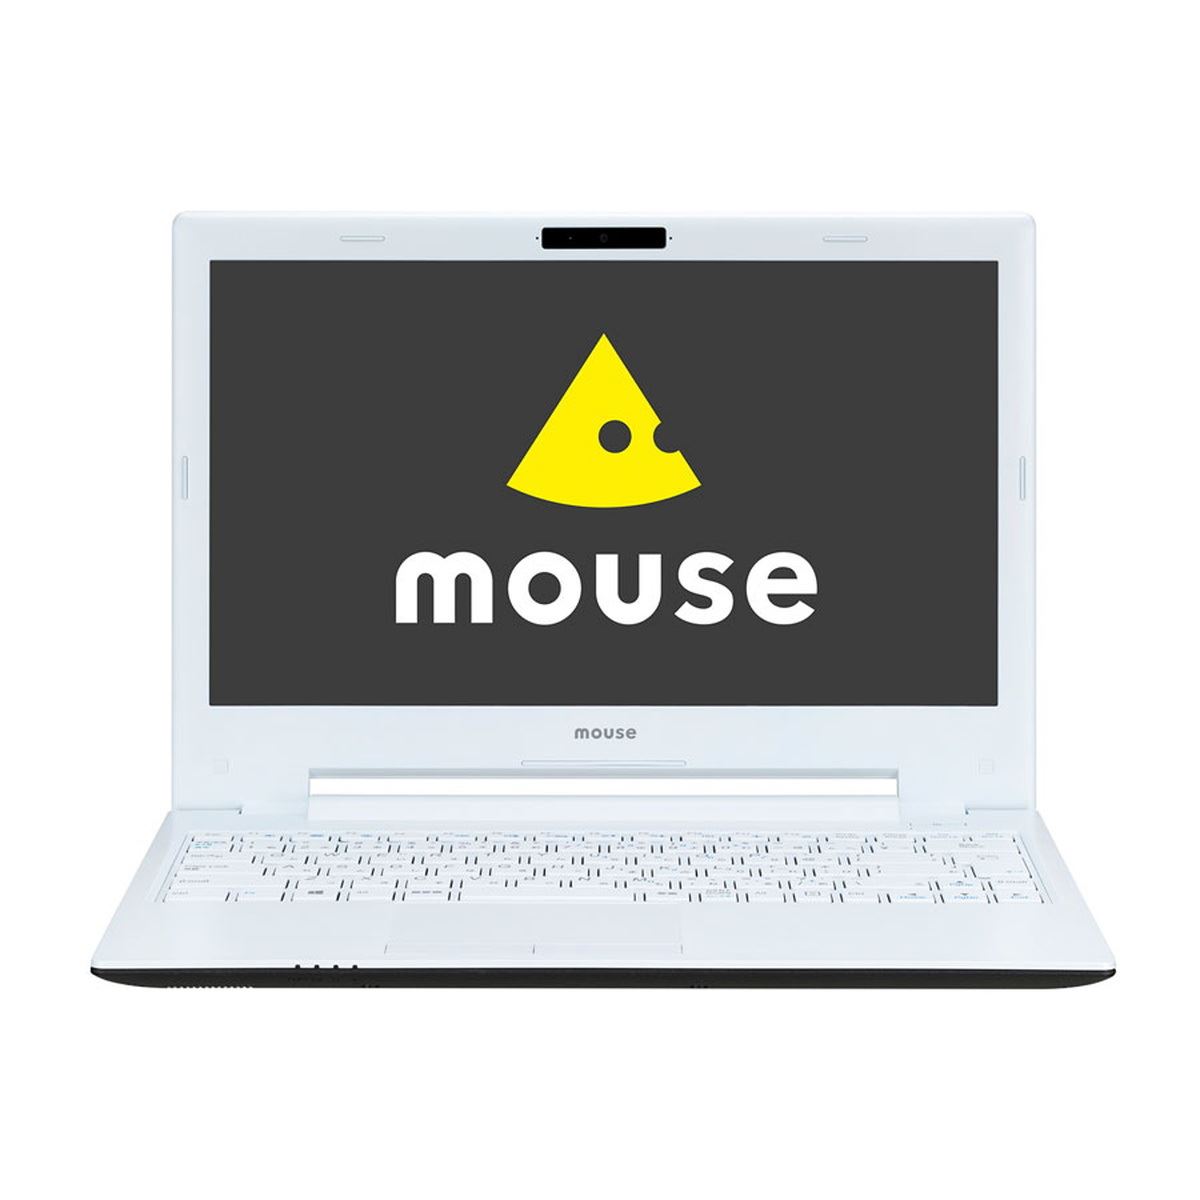 価格.com20周年記念パソコン「マウスモデル」ノートPC レビュー - 価格 ...